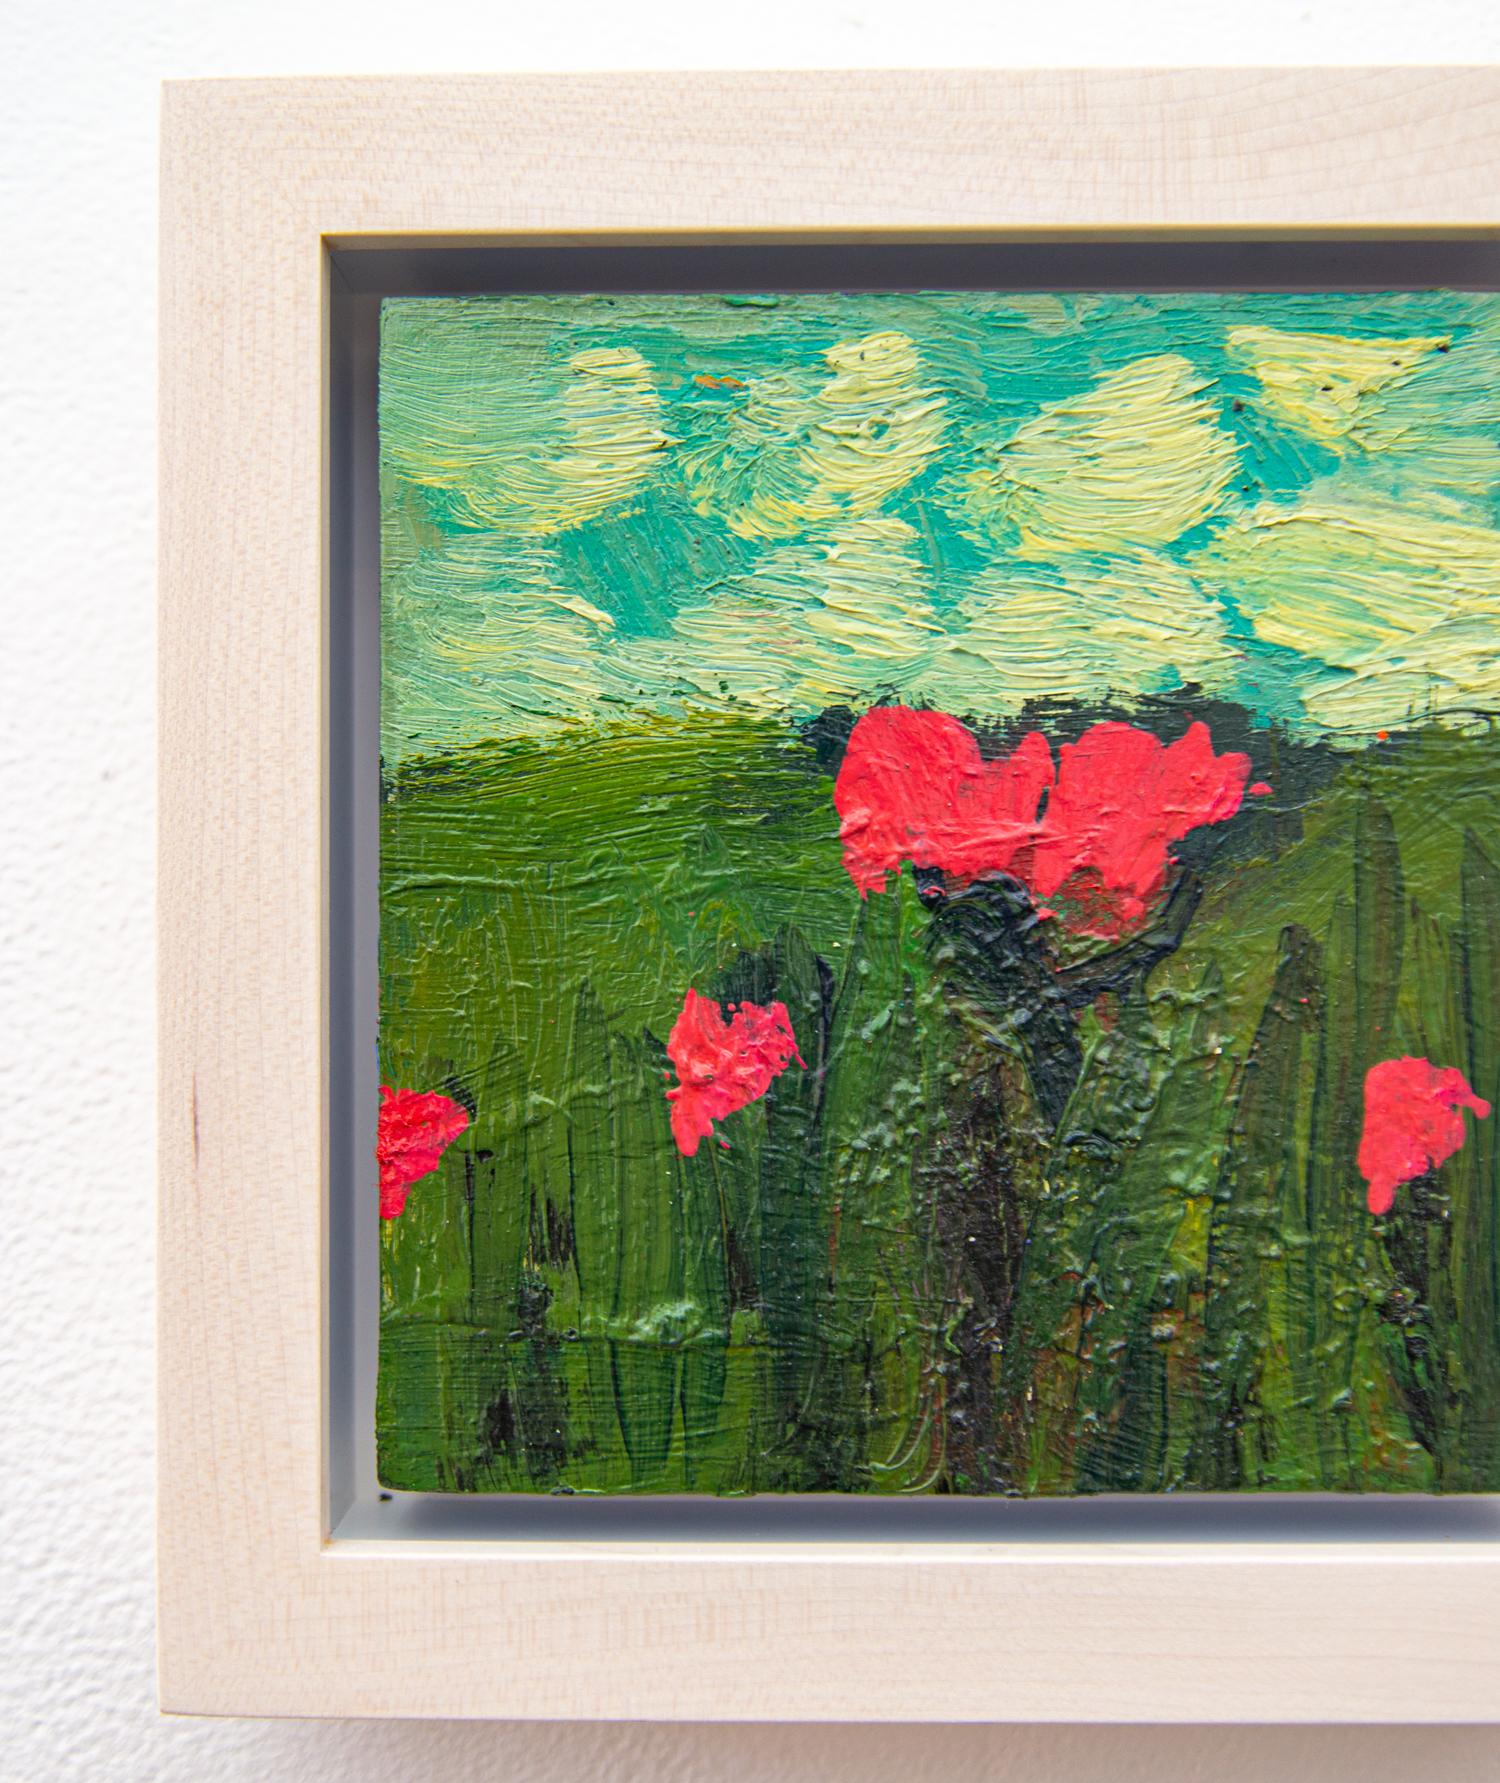 Auf diesem schönen Ölgemälde von Jennifer Hornyak stehen leuchtend rote Blumen - vielleicht Mohnblumen - in einem grünen Feld. Weiße Wolken vor einem türkisblauen Himmel umrahmen die Blumen und bieten einen atemberaubenden Kontrast. Hornyak ist